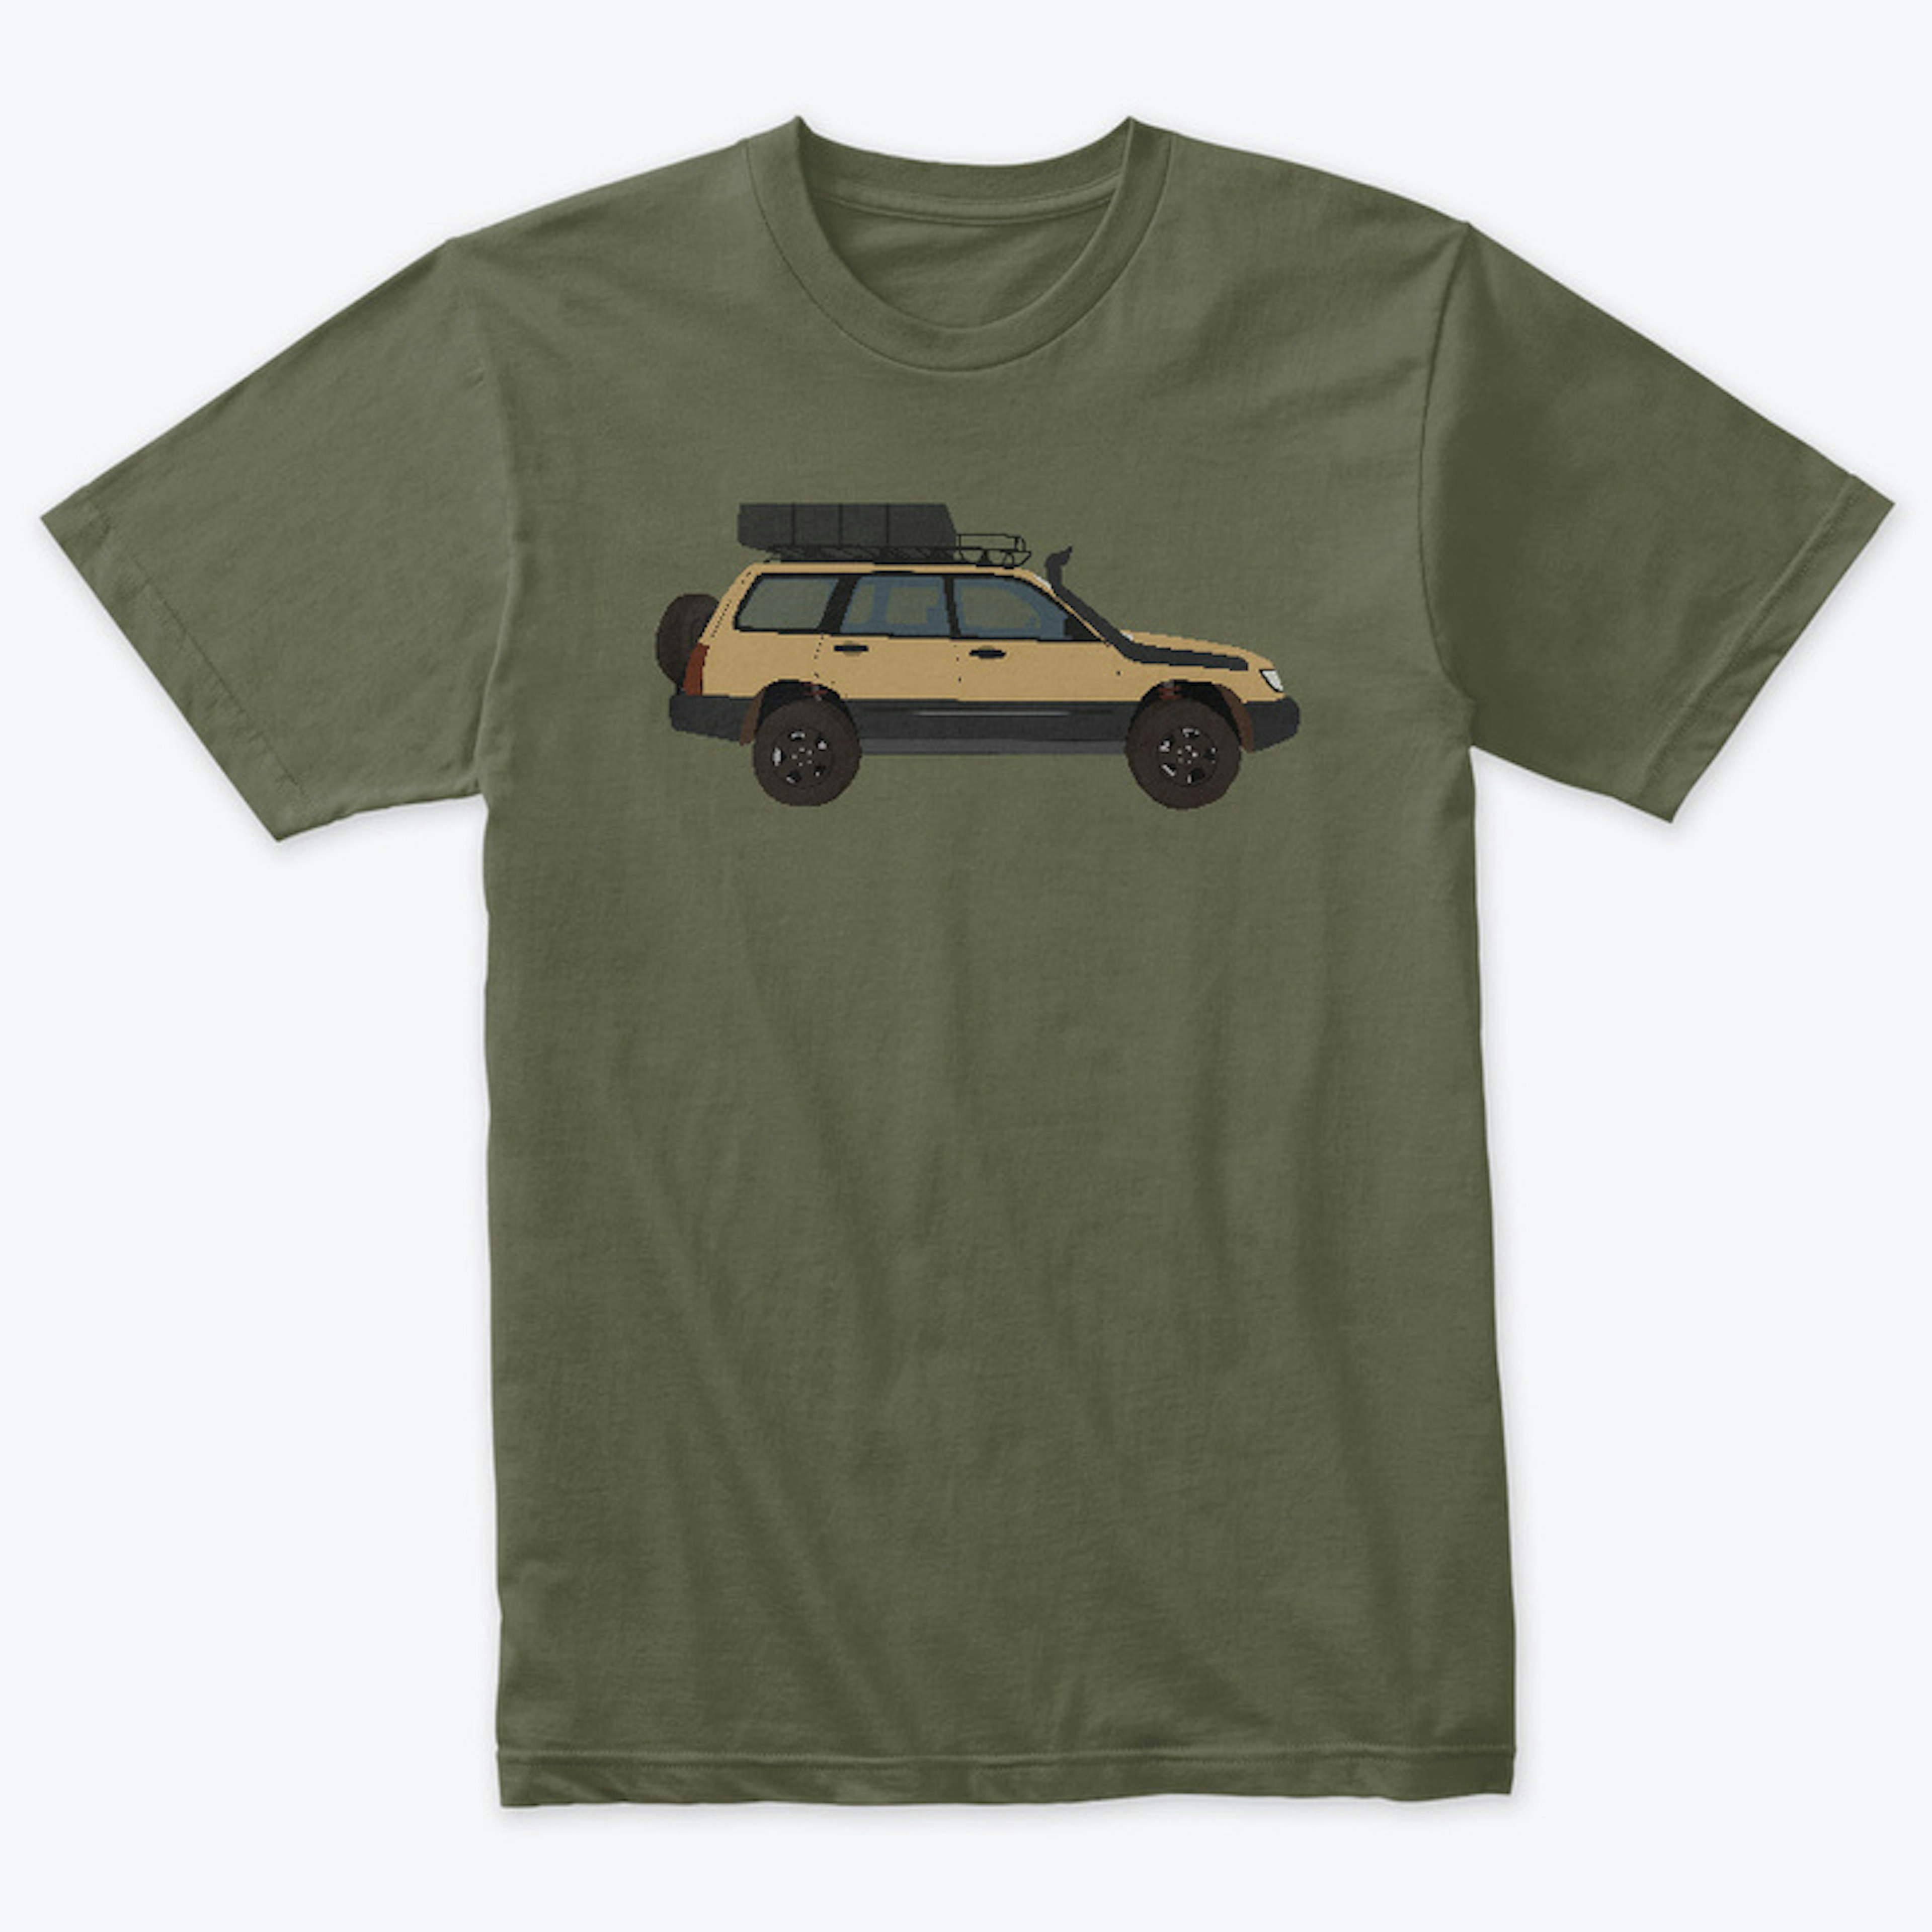 ALNSM TactiFoz Operator T-Shirt